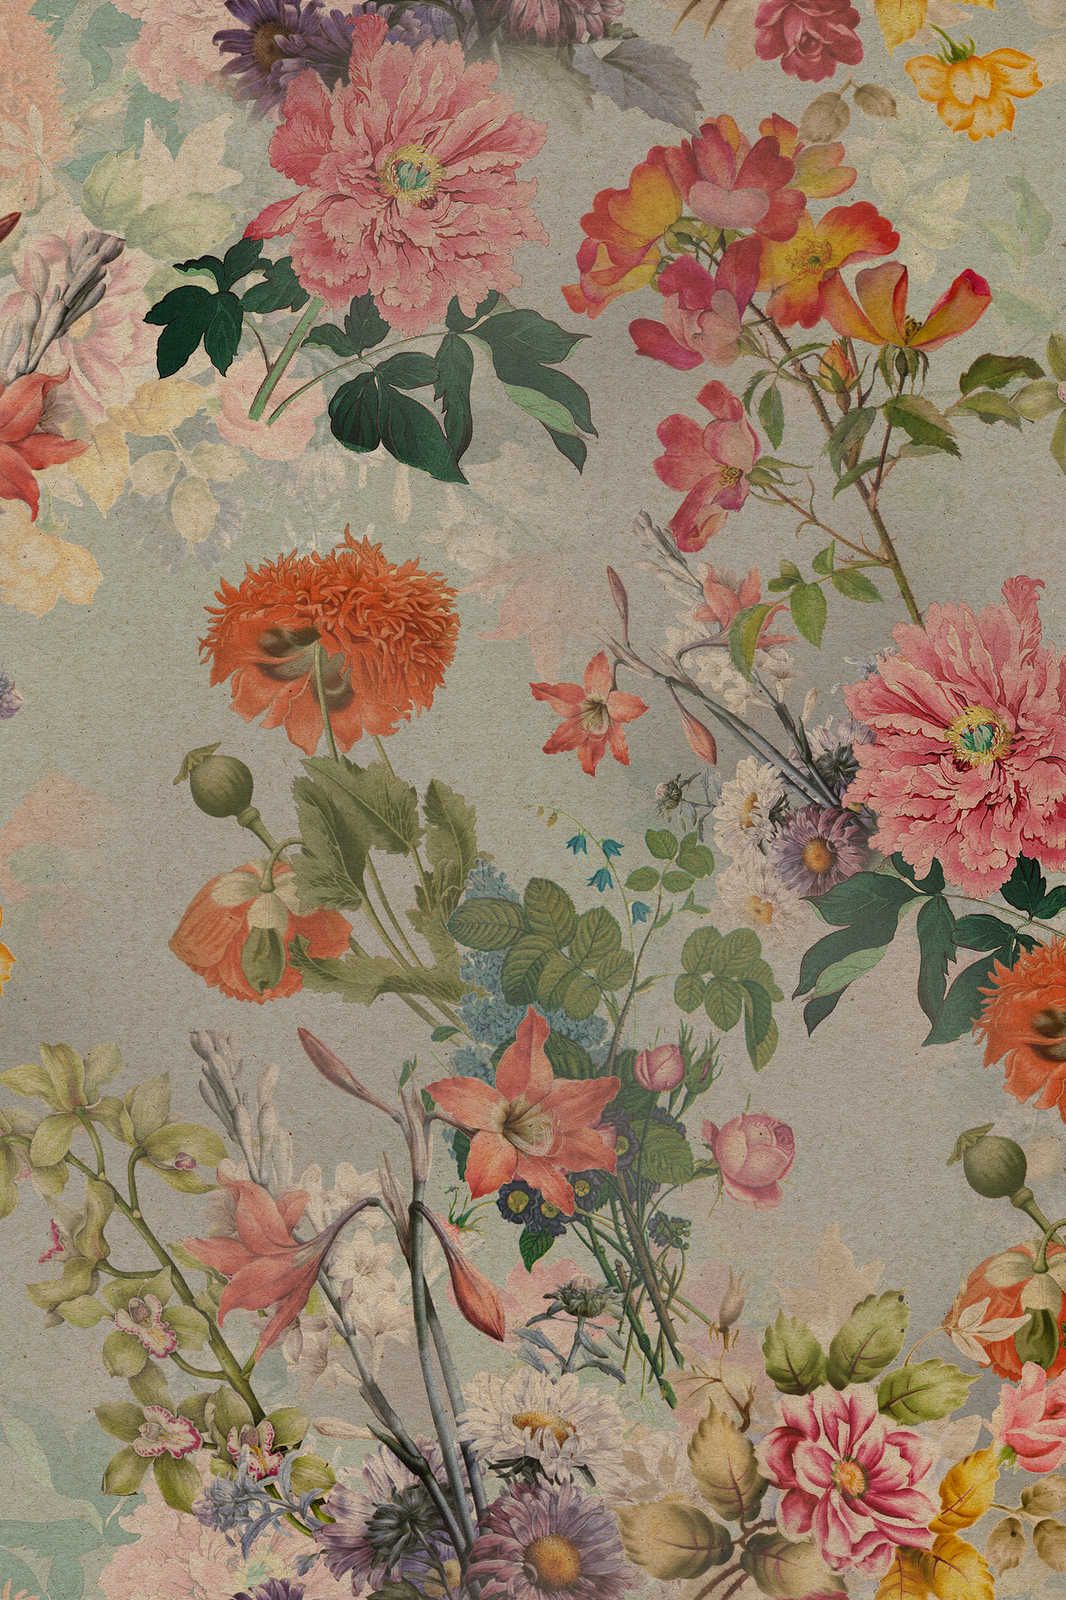             Amelies Home 1 - Vintage Blumen Leinwandbild im romantischen Landhausstil – 0,90 m x 0,60 m
        